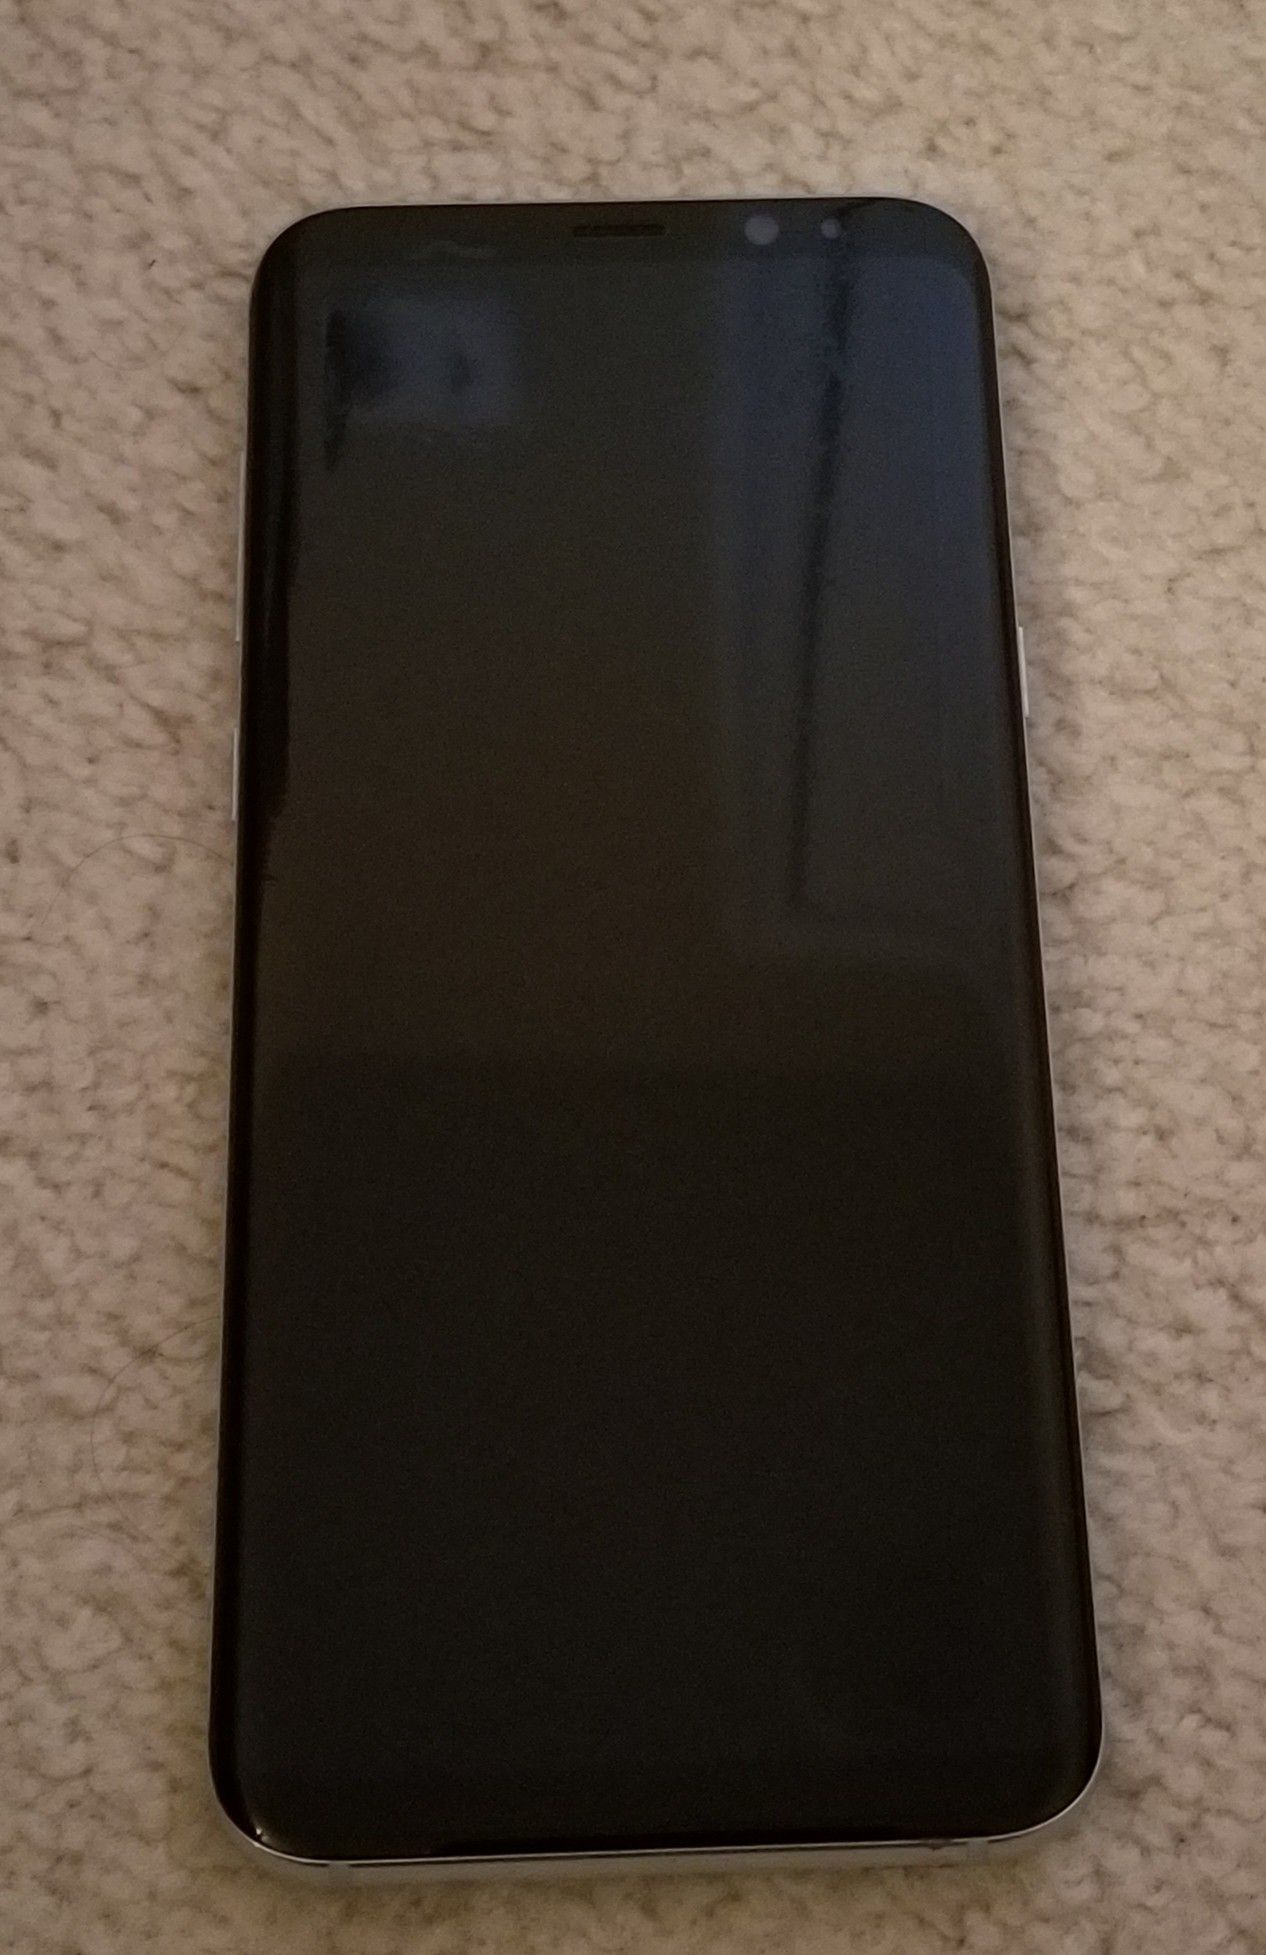 Galaxy S8 plus $250